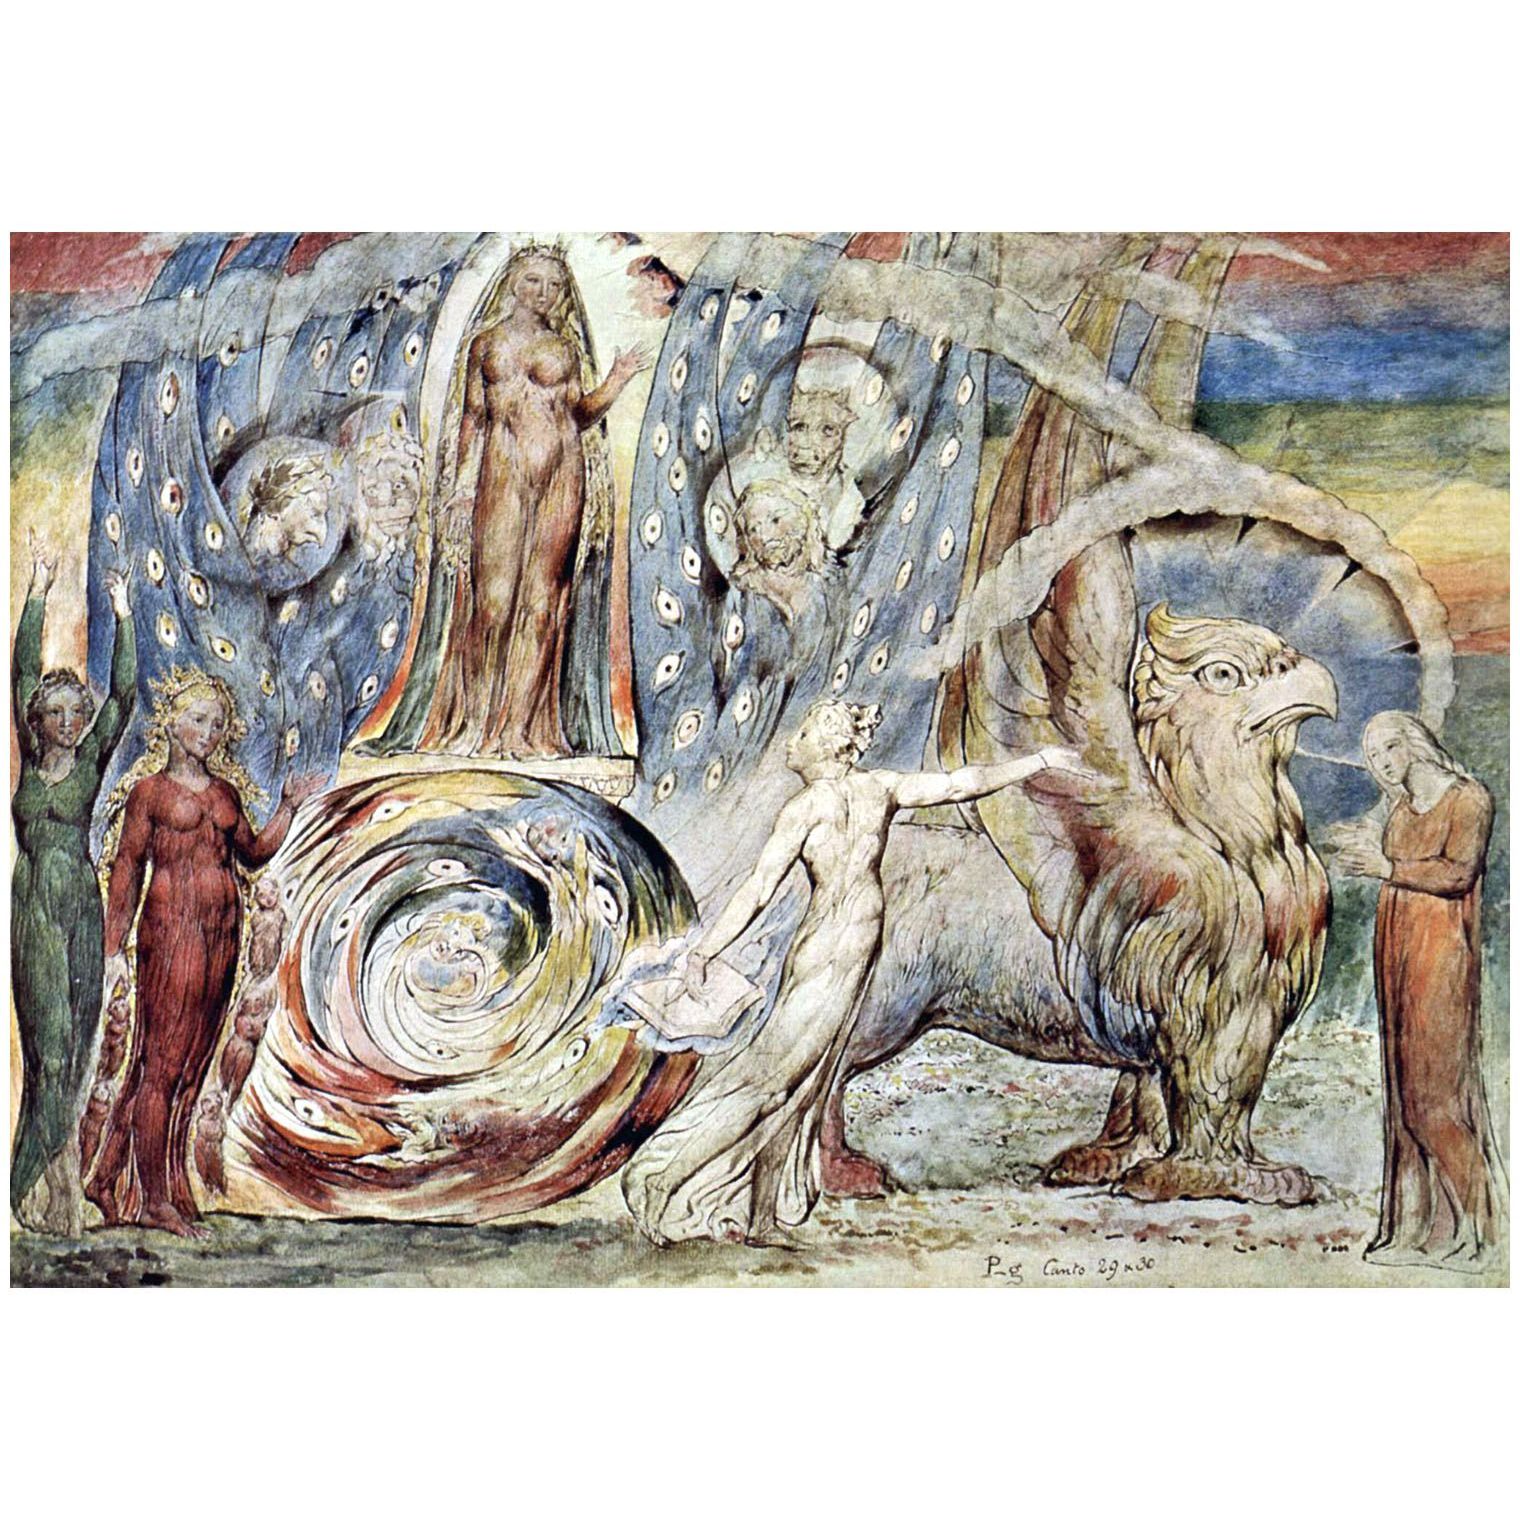 William Blake. Divine Comedy, Purgatorio, Canto XXX. 1824-1827. British Museum